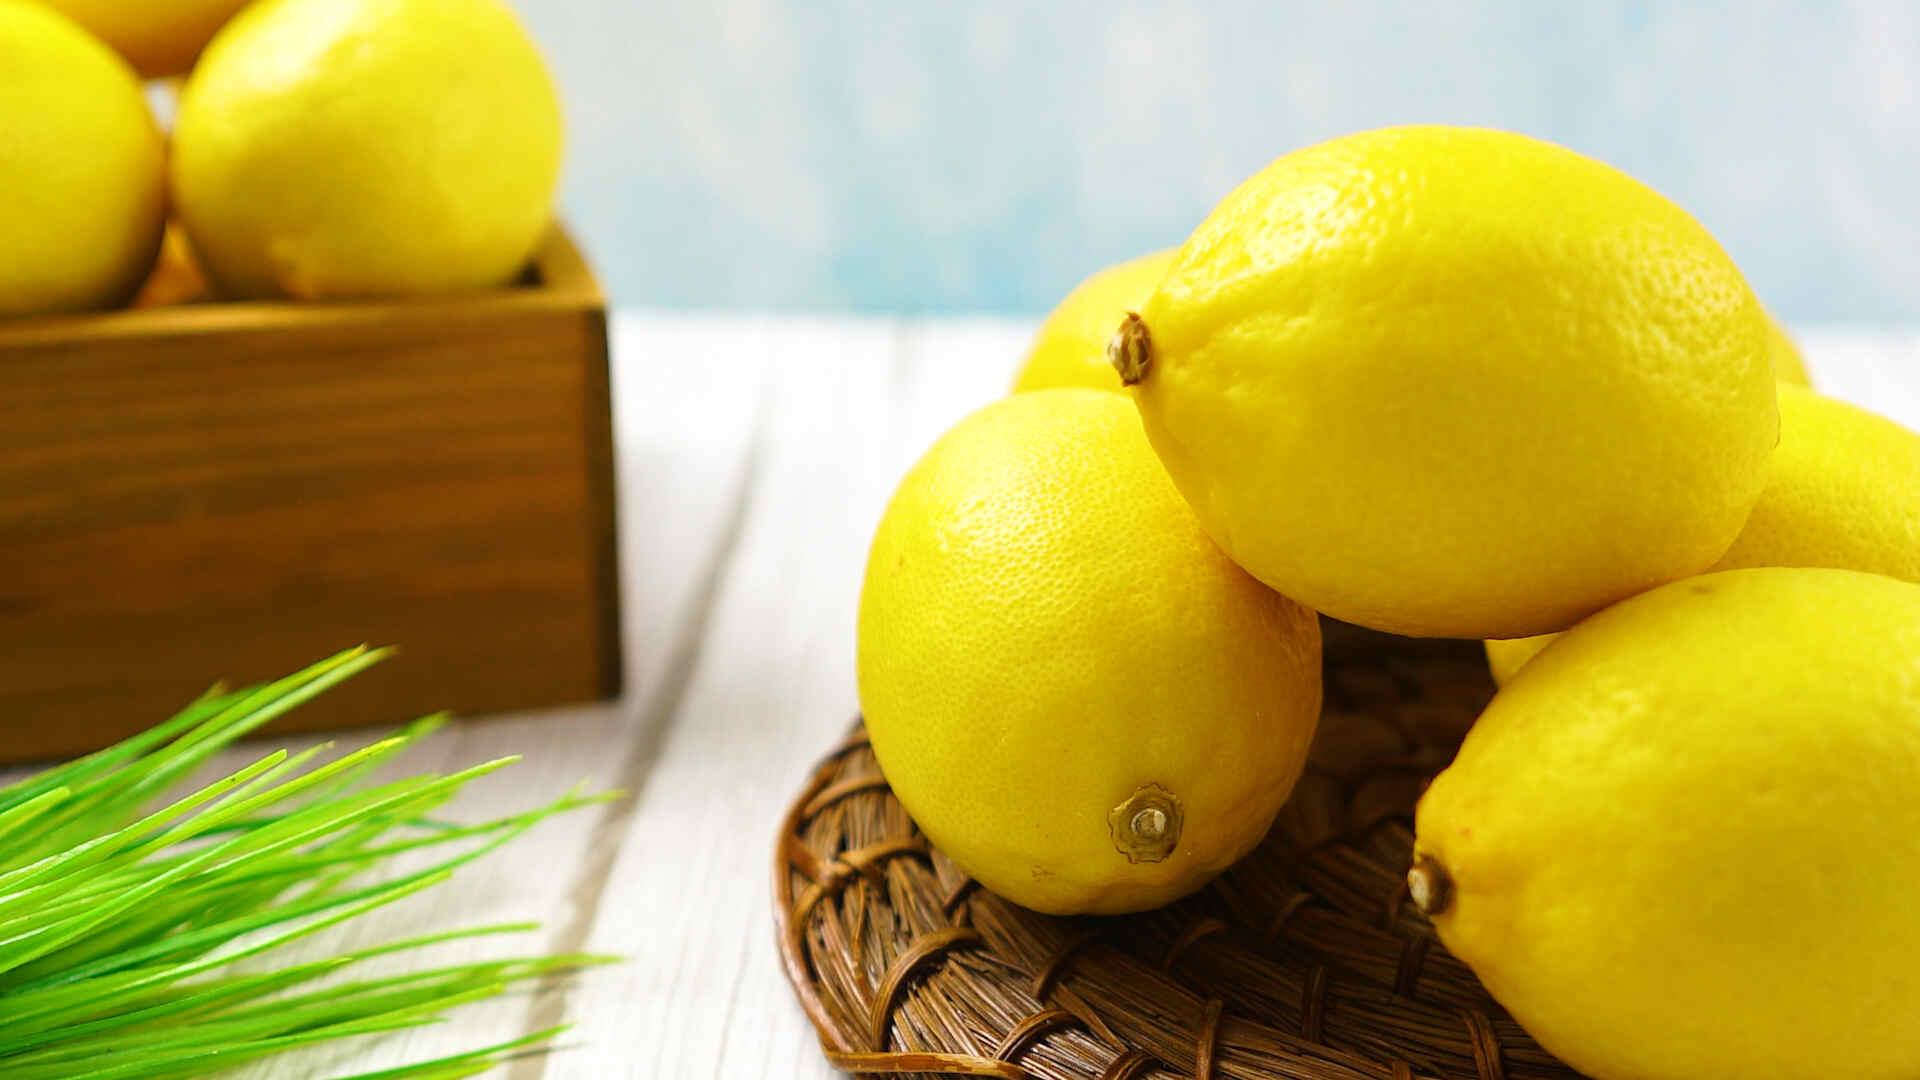 Lemon reg conventional 1 each whole foods market